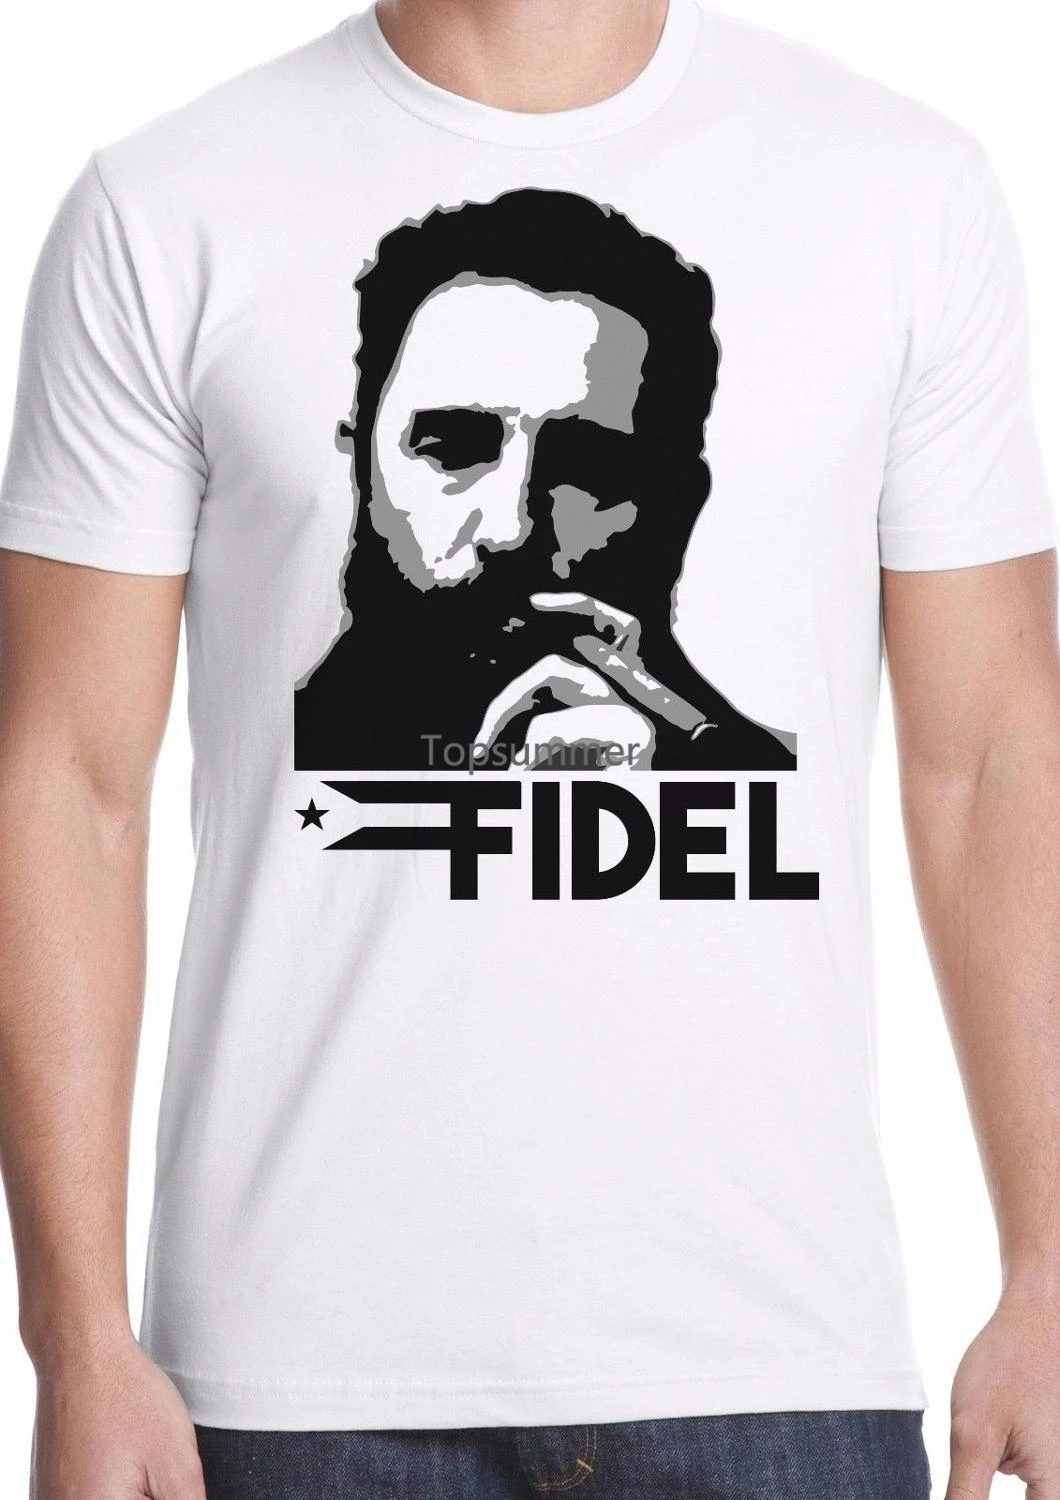 

Футболка с круглым вырезом, Повседневная футболка для взрослых, футболка Фидель Кастро, футболка с изображением кубинской Рипа, коммунистической революции Хе Гевара, Мужская футболка